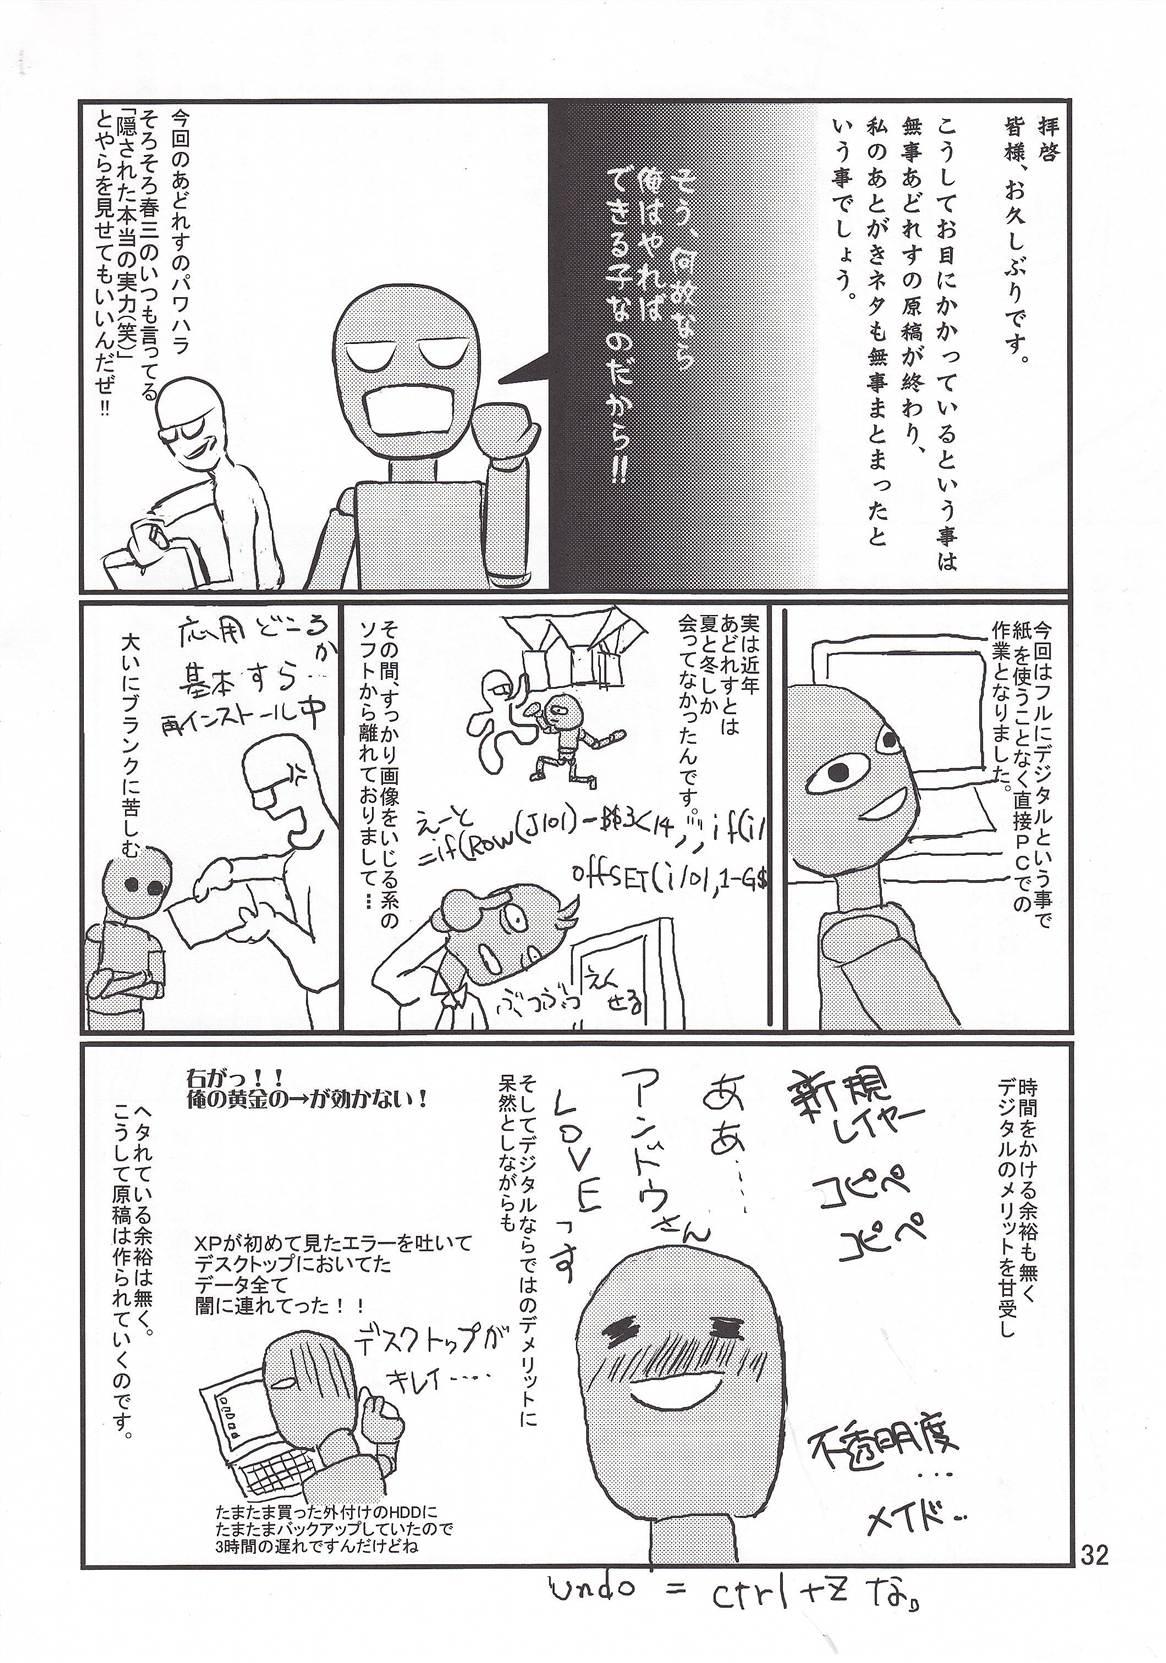 Touma x Misaka's Moe Doujinshi Page 32 Of 35 toaru majutsu no index.